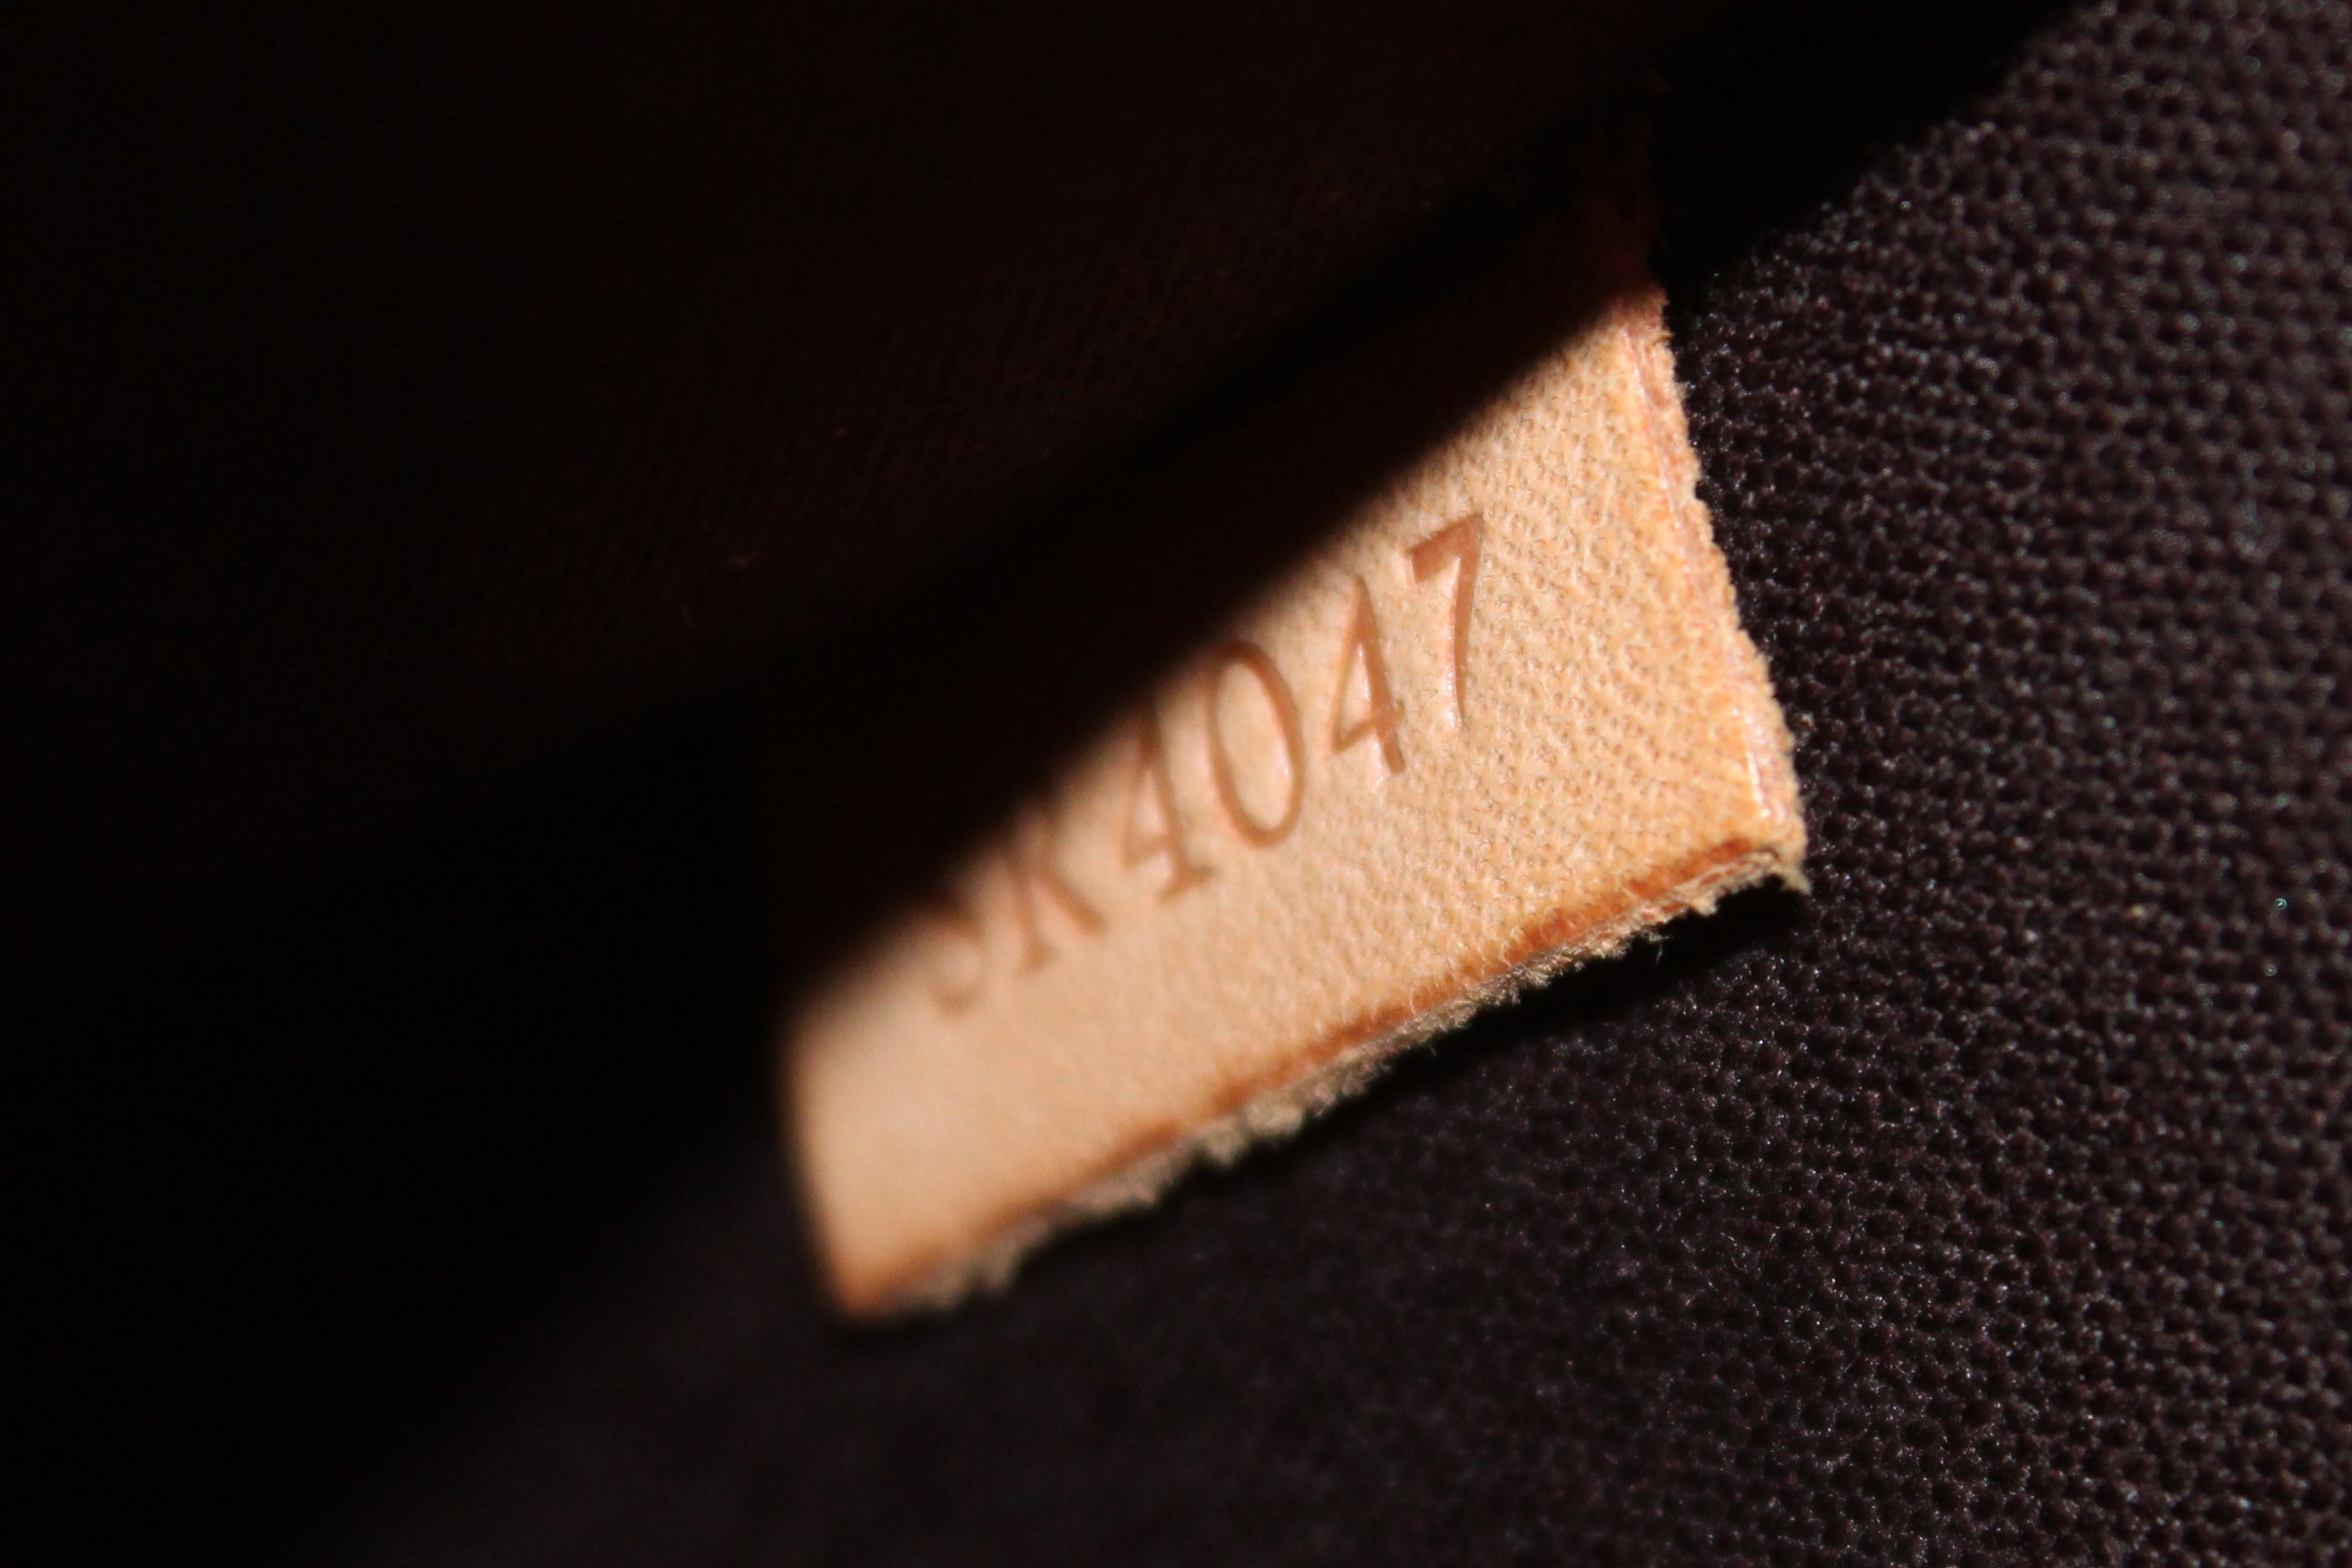 Louis Vuitton Vintage Amarante Monogram Roxbury Drive Patent Leather  Shoulder Bag, Best Price and Reviews